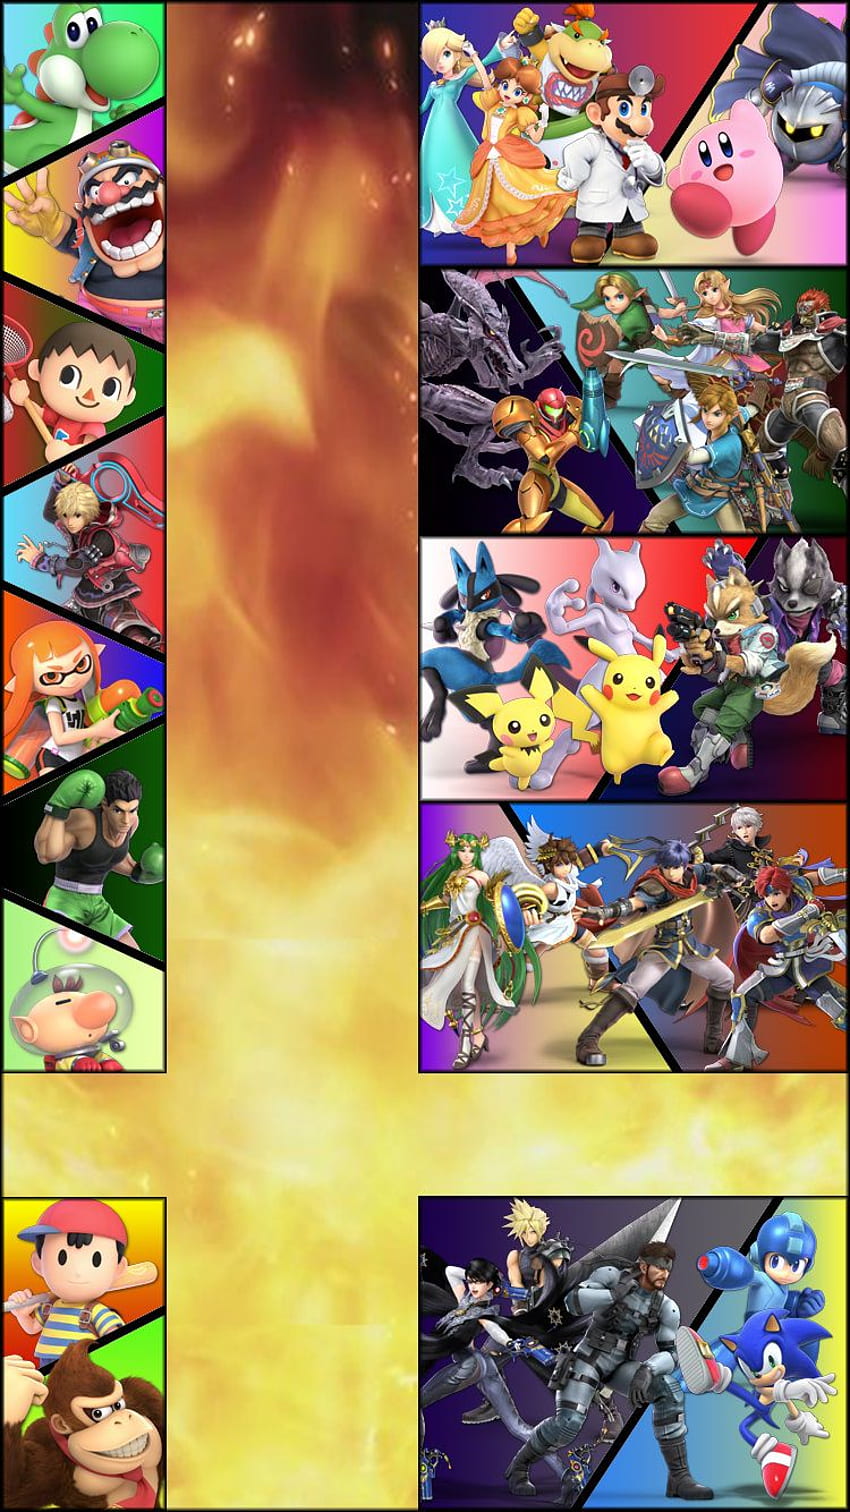 Smash Bros Ultimate Phone, Super Smash Bros HD phone wallpaper